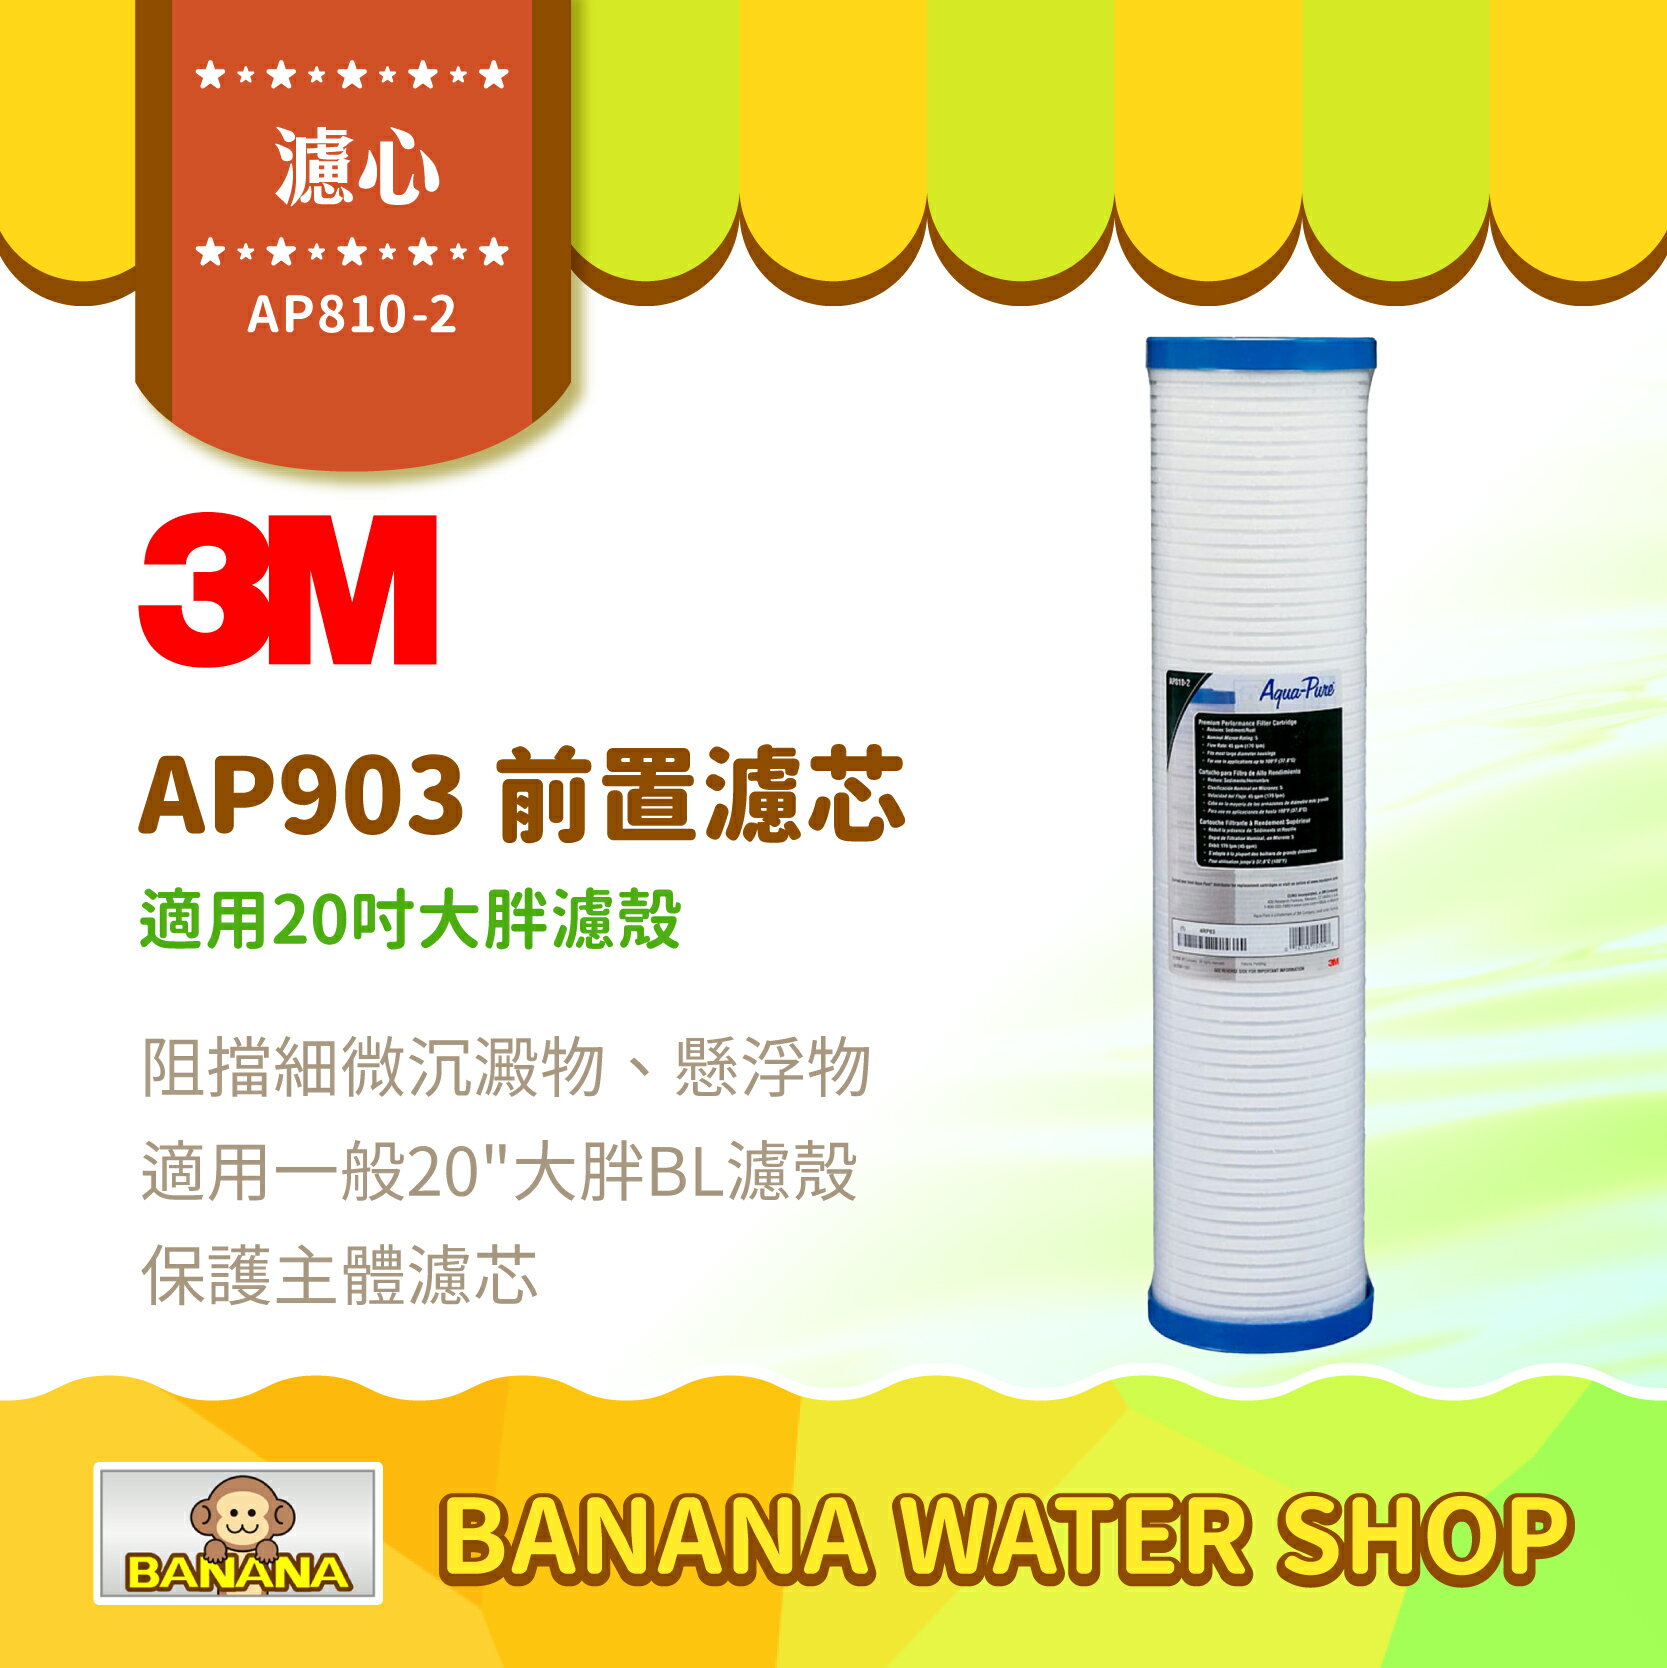 【3M】AP810-2 濾心 全戶式淨水系統 AP903 前置保護濾芯 20吋大胖濾殼可用